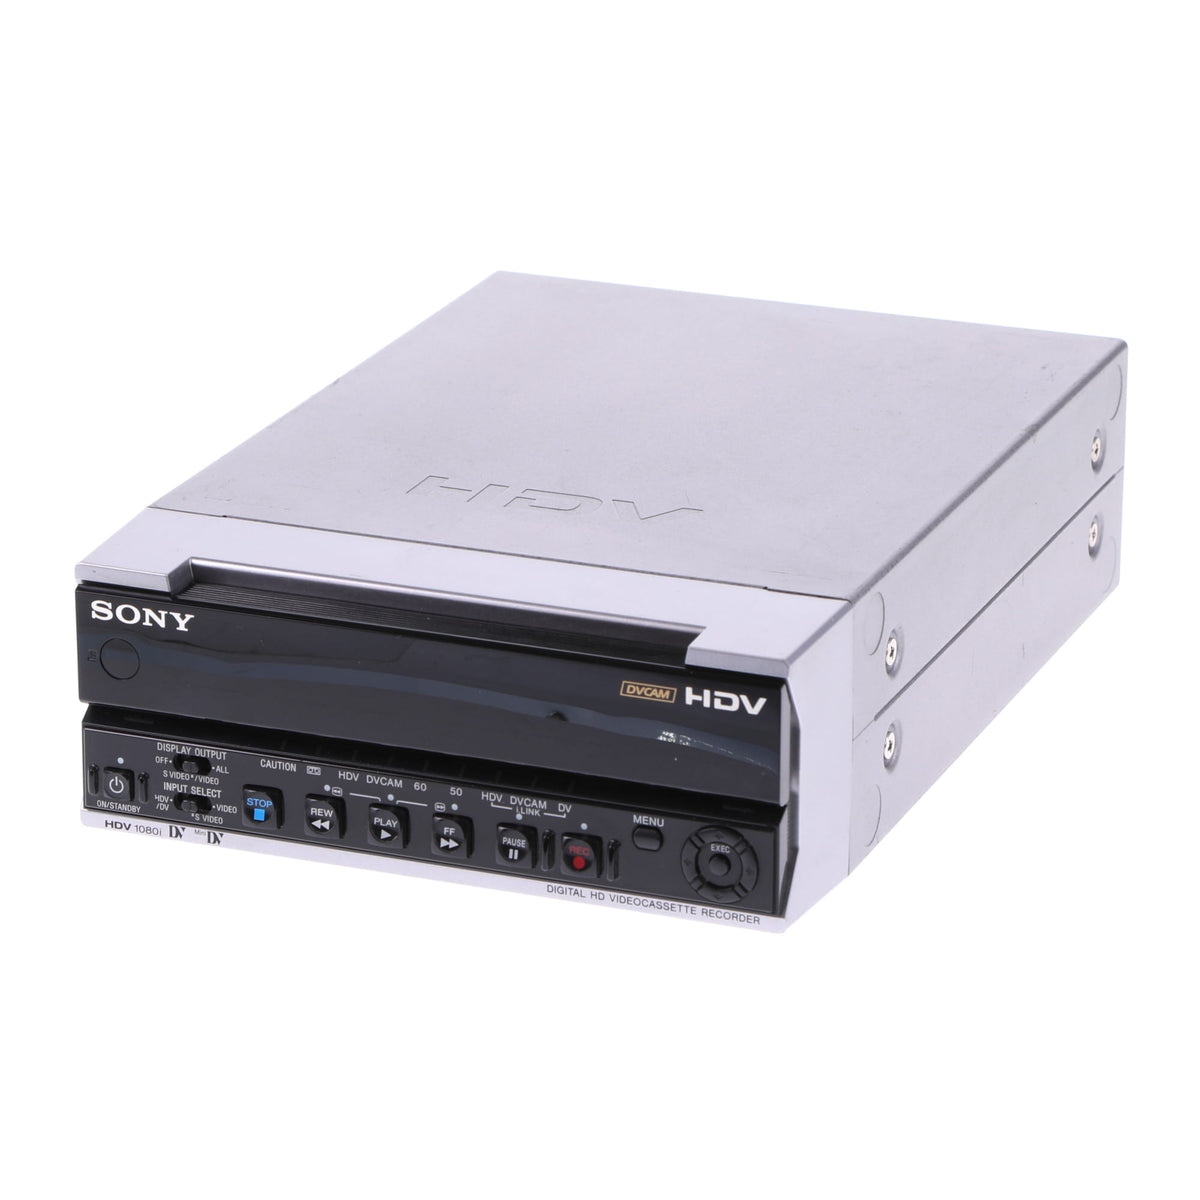 HDVレコーダー ビデオデッキ SONY HVR-M15AJ - テレビ/映像機器